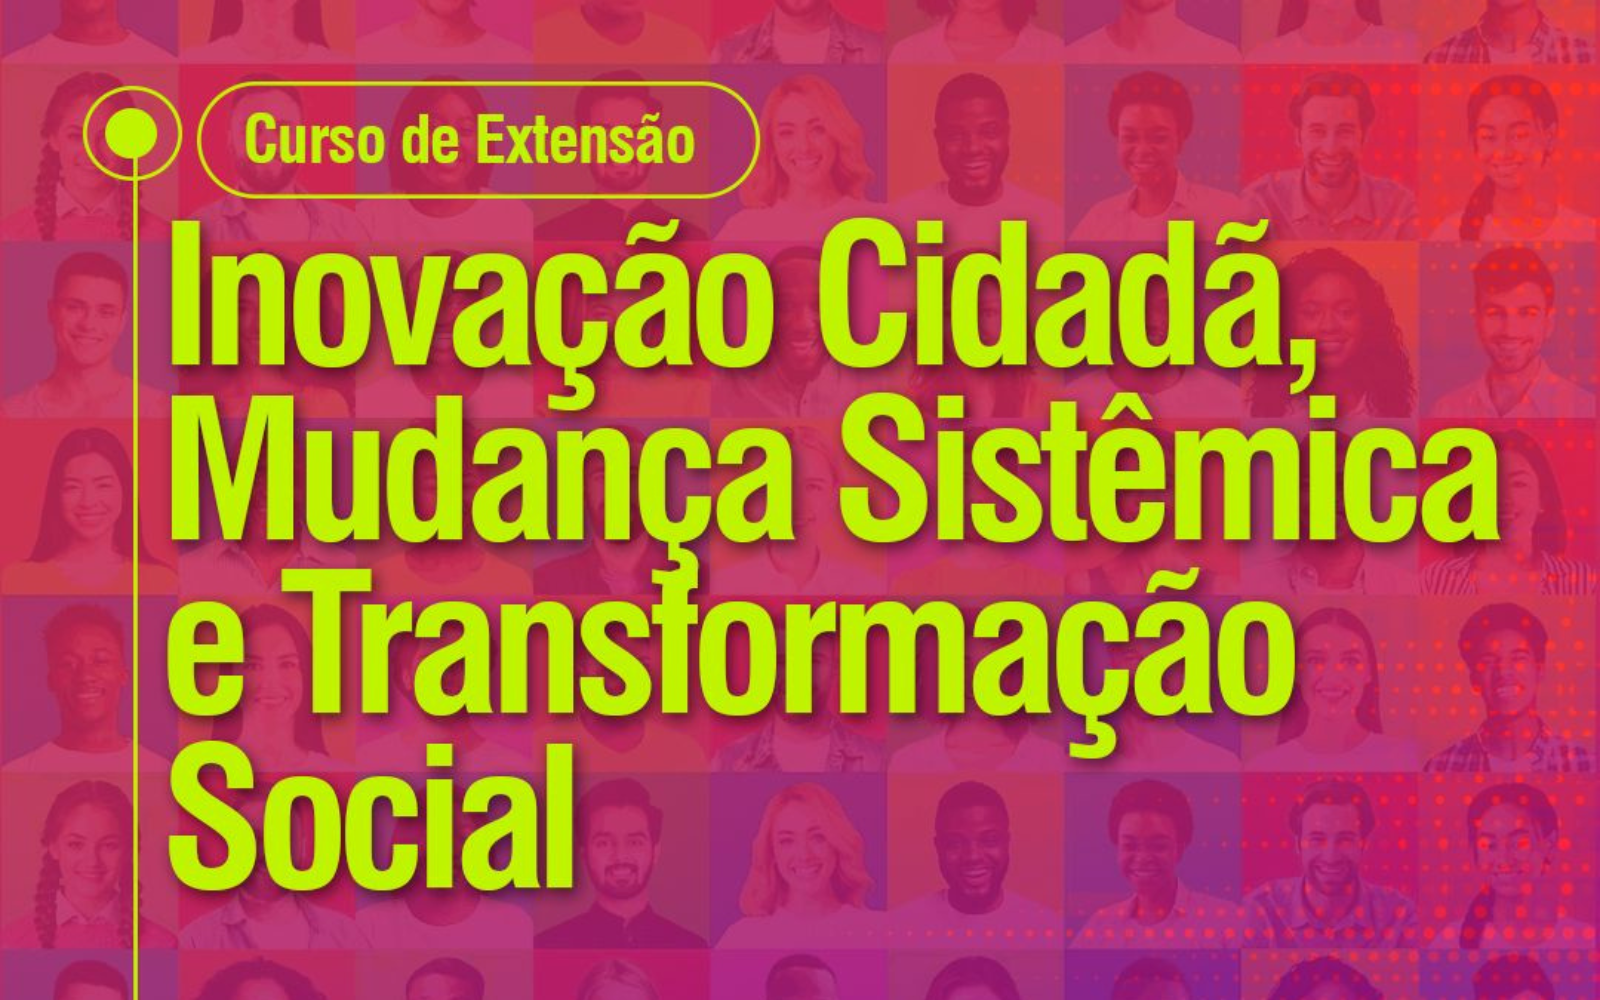 Mosaico com as fotos de várias pessoas sob um filtro rosa, Em destaque, lê-se "Curso de Extensão", "Inovação Cidadã, Mudança Sistêmica e Transformação Social".